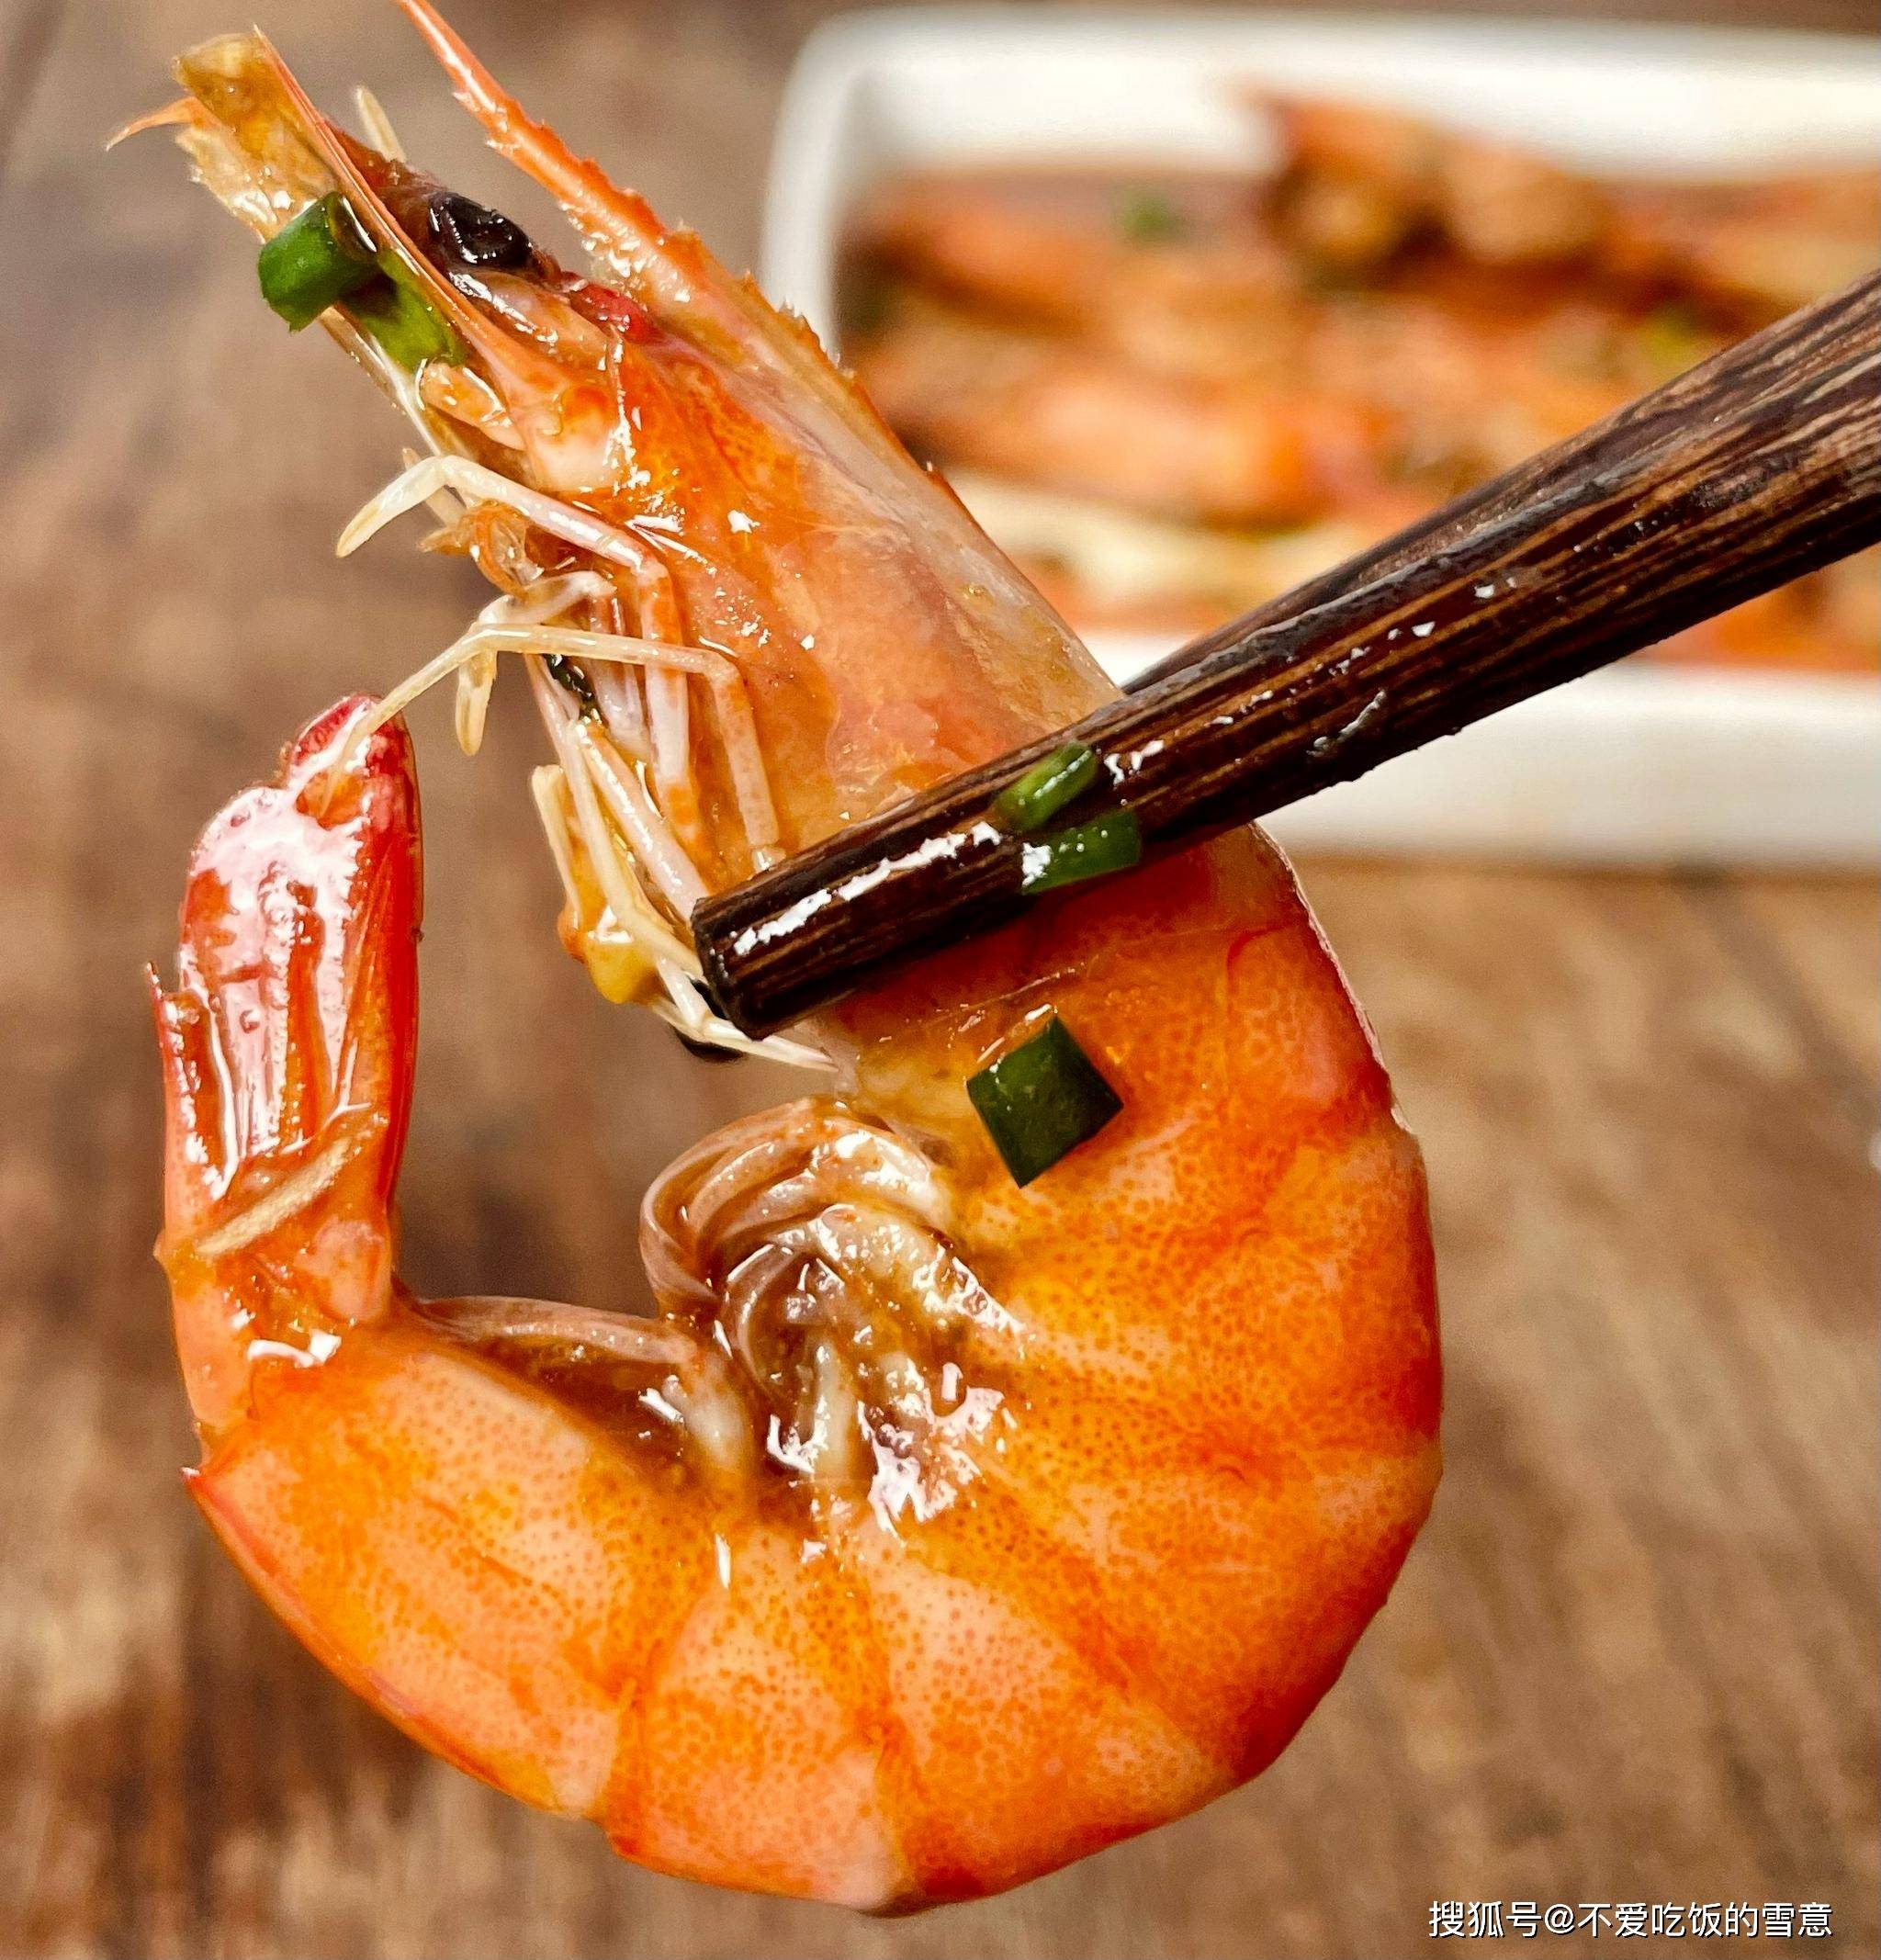 《油焖大虾:鲁菜经典,鲜美传承》